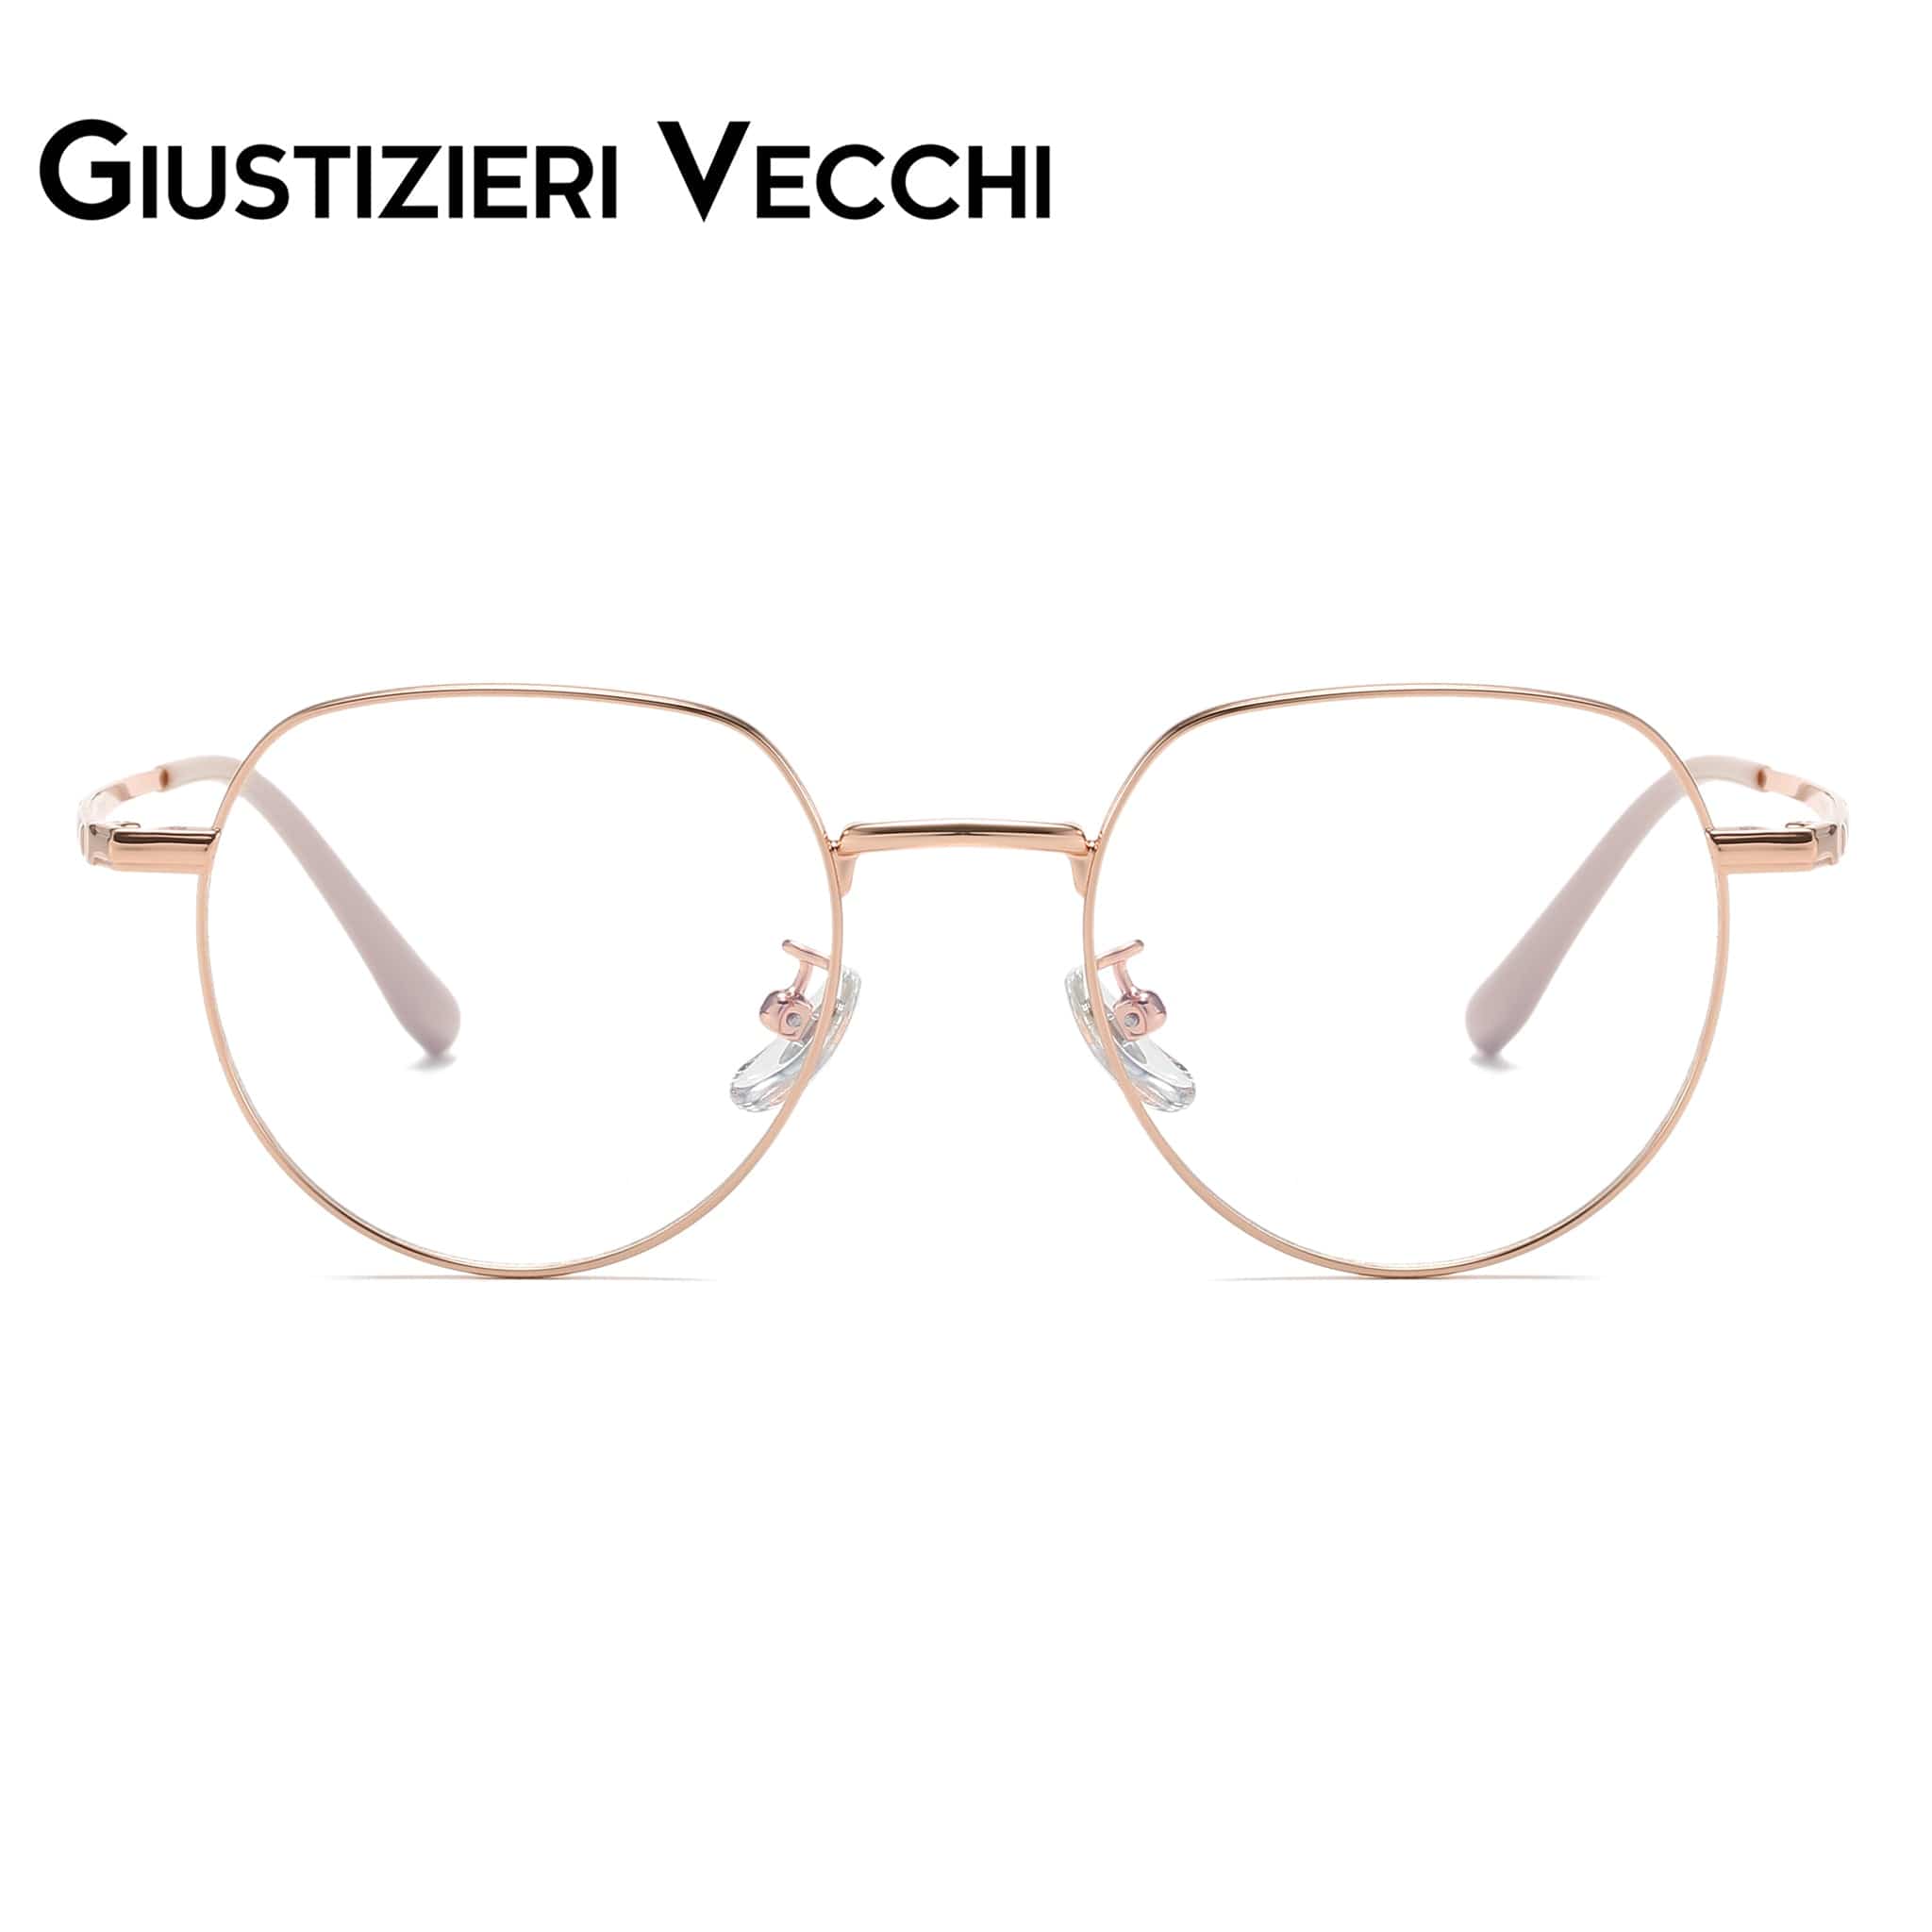 GIUSTIZIERI VECCHI Eyeglasses Small / Rose Gold LunarTide Duo